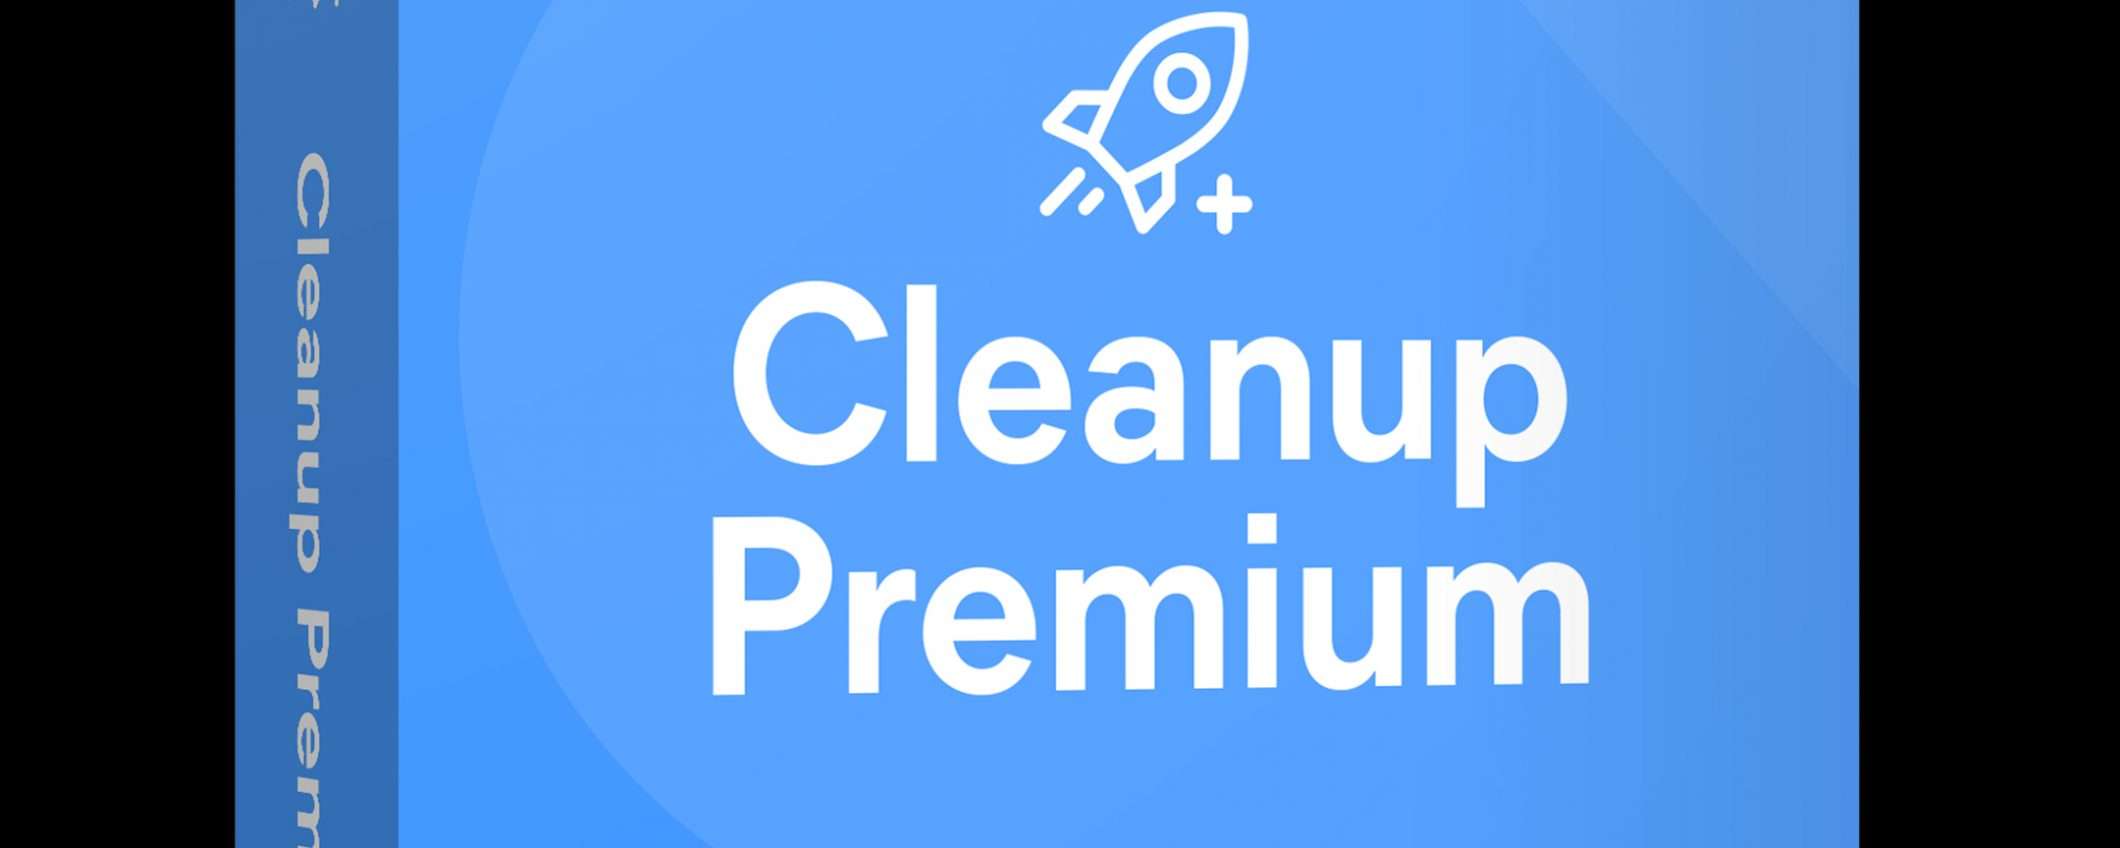 Avast Cleanup Premium: sconto 29% per ottimizzare il PC